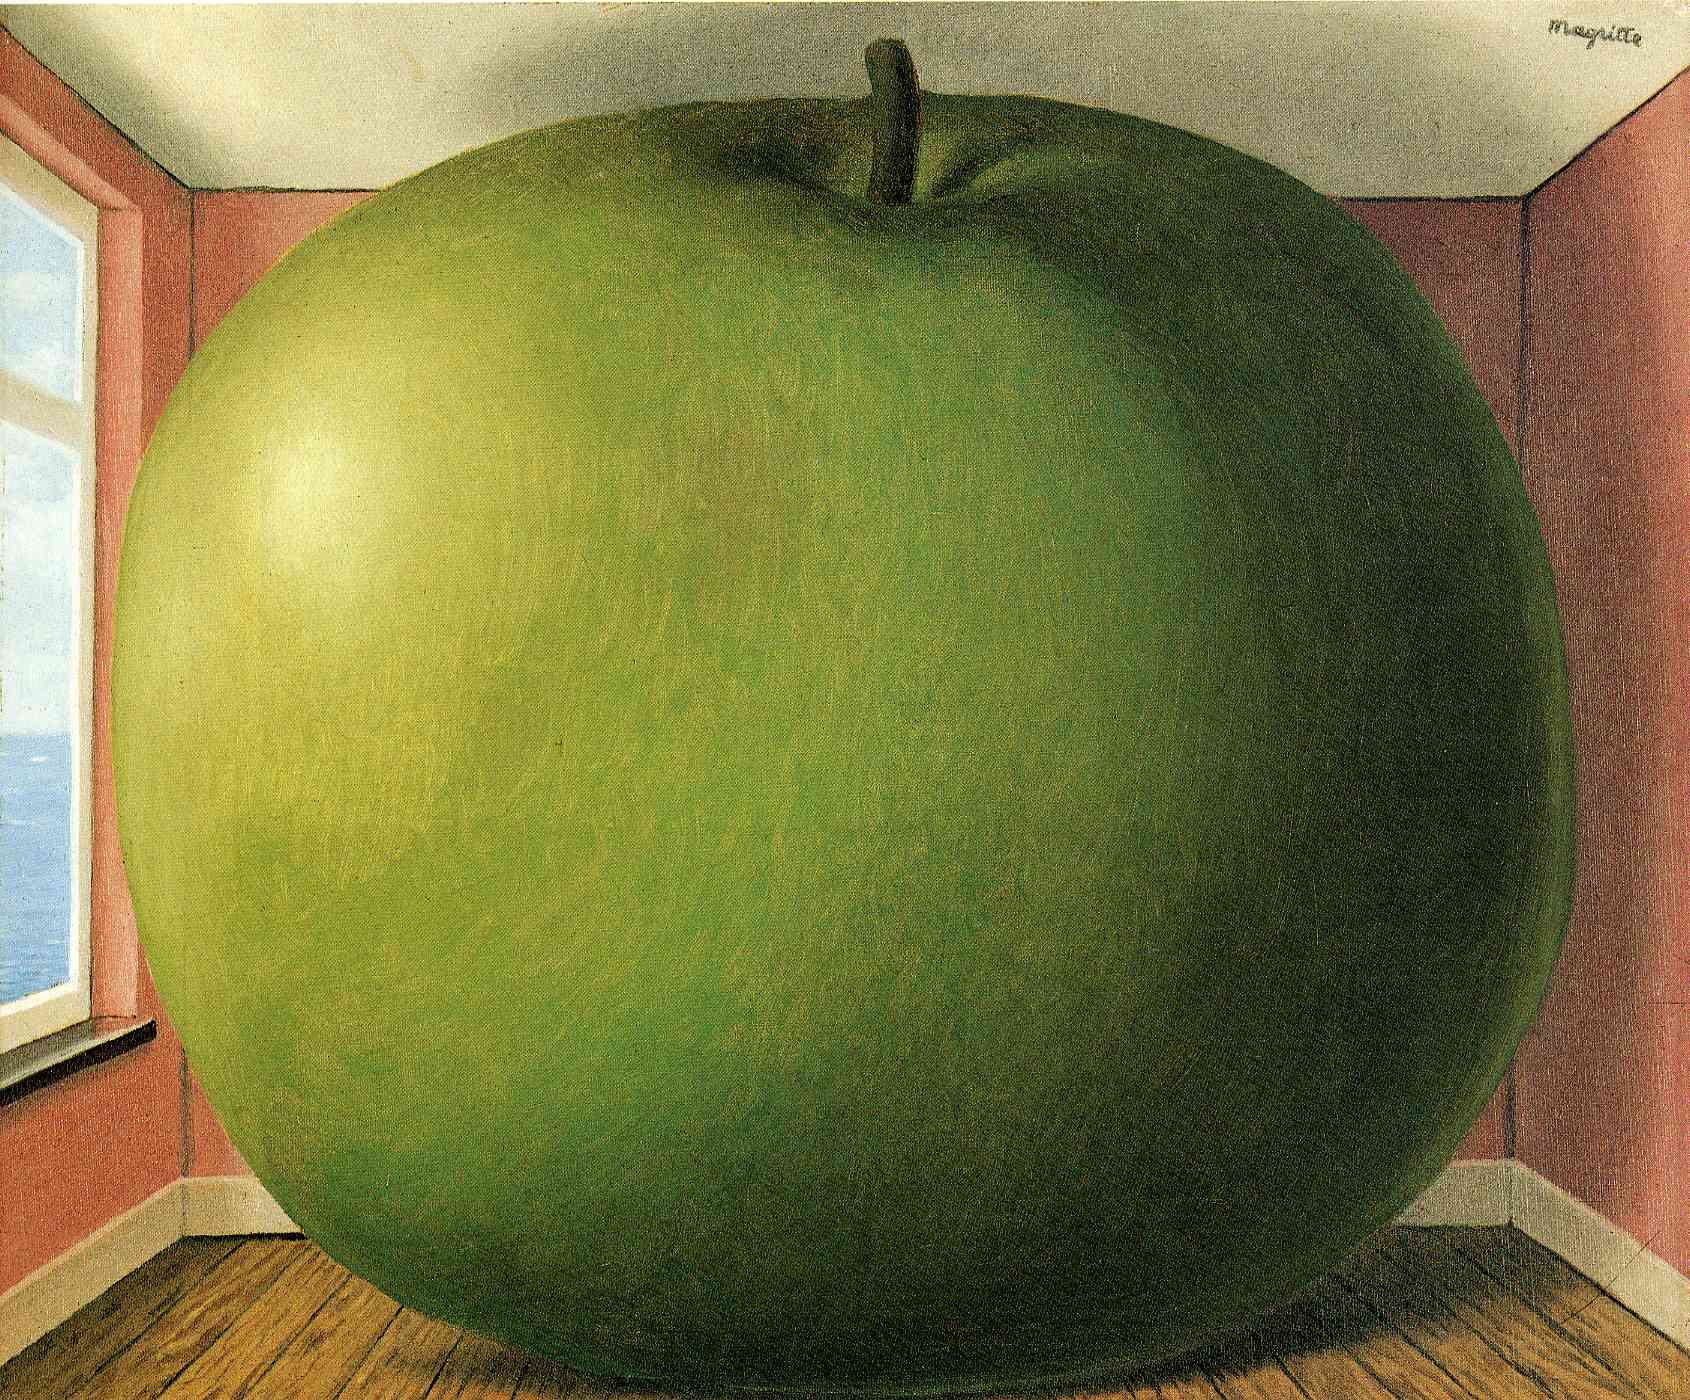 Camera de Ascultare by René Magritte - 1952 - 55 x 45 cm 